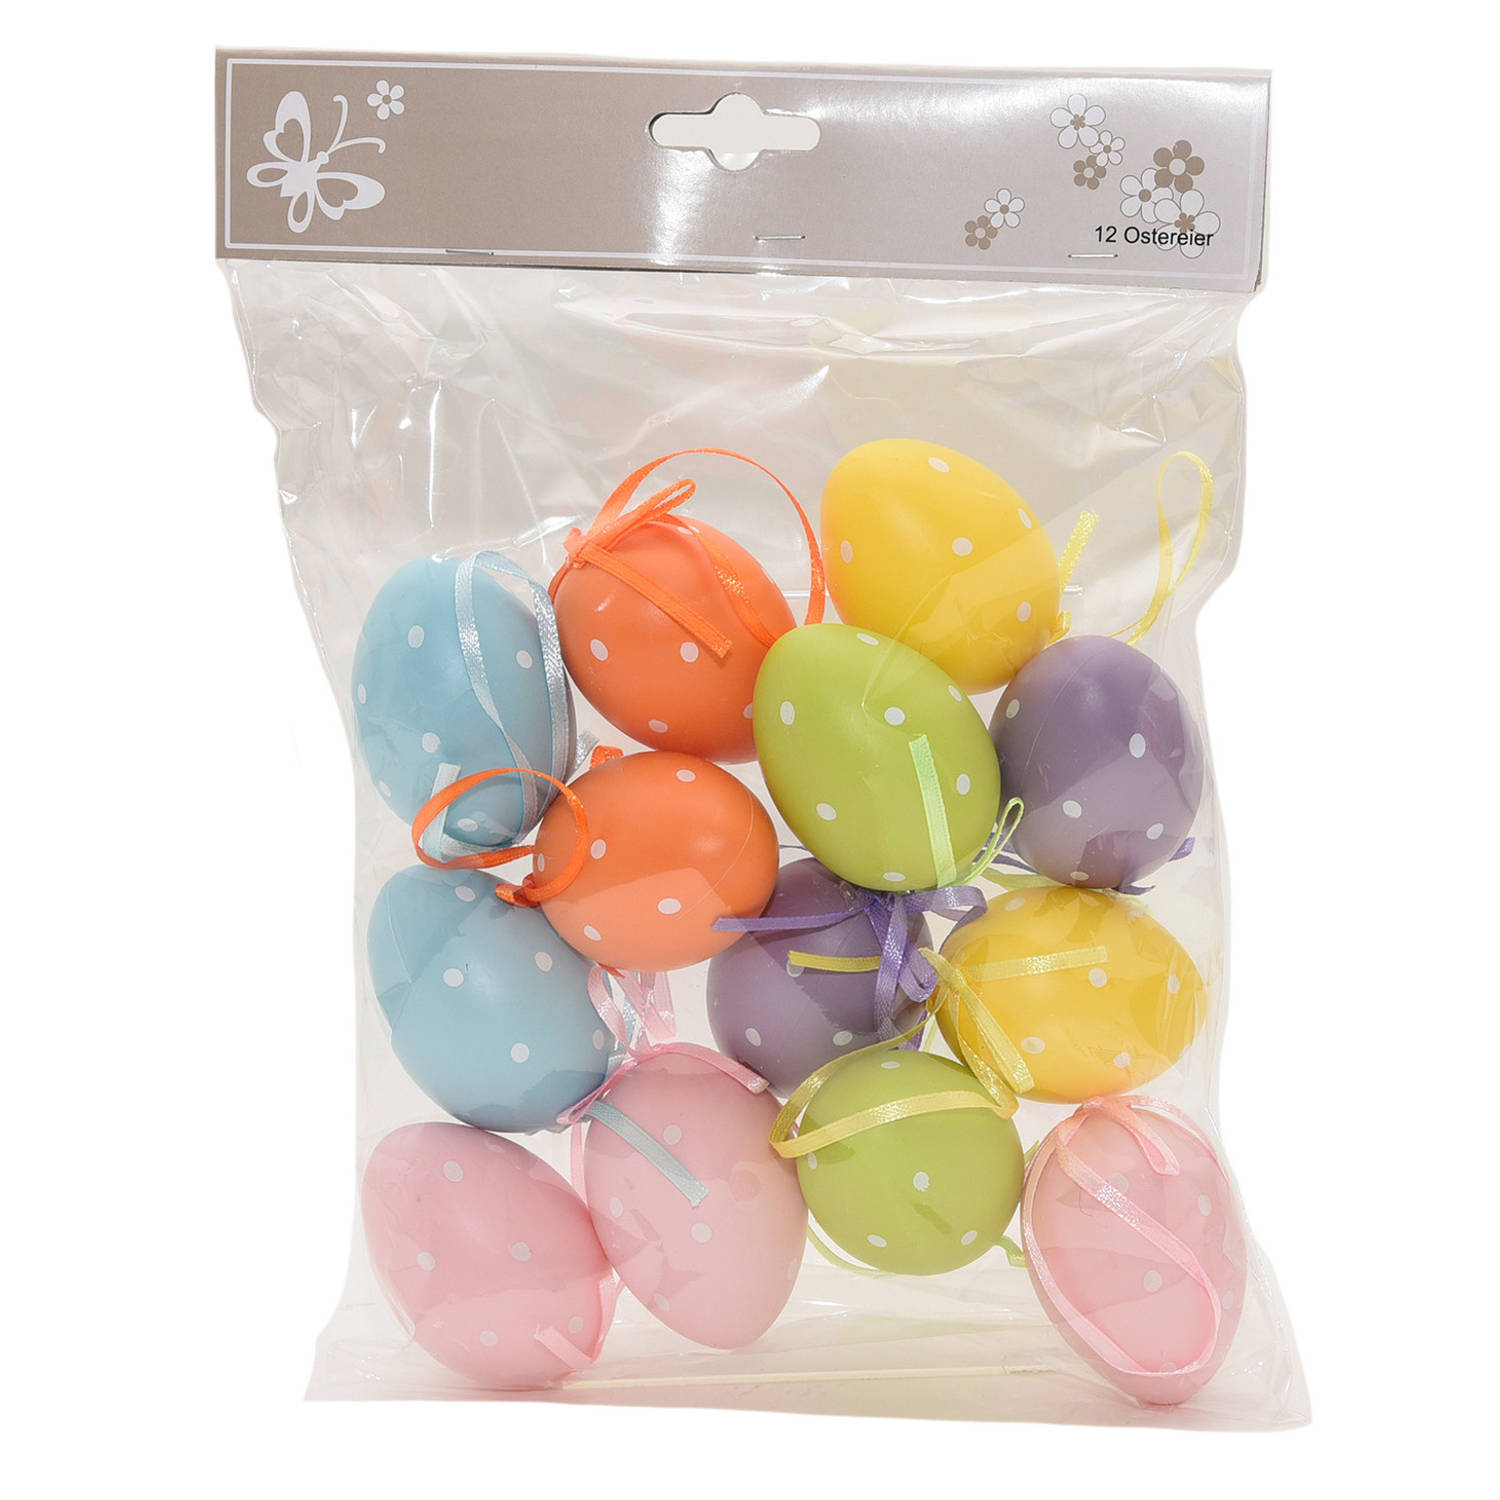 12x Gekleurde plastic/kunststof decoratie eieren/Paaseieren 6 cm - Feestdecoratievoorwerp